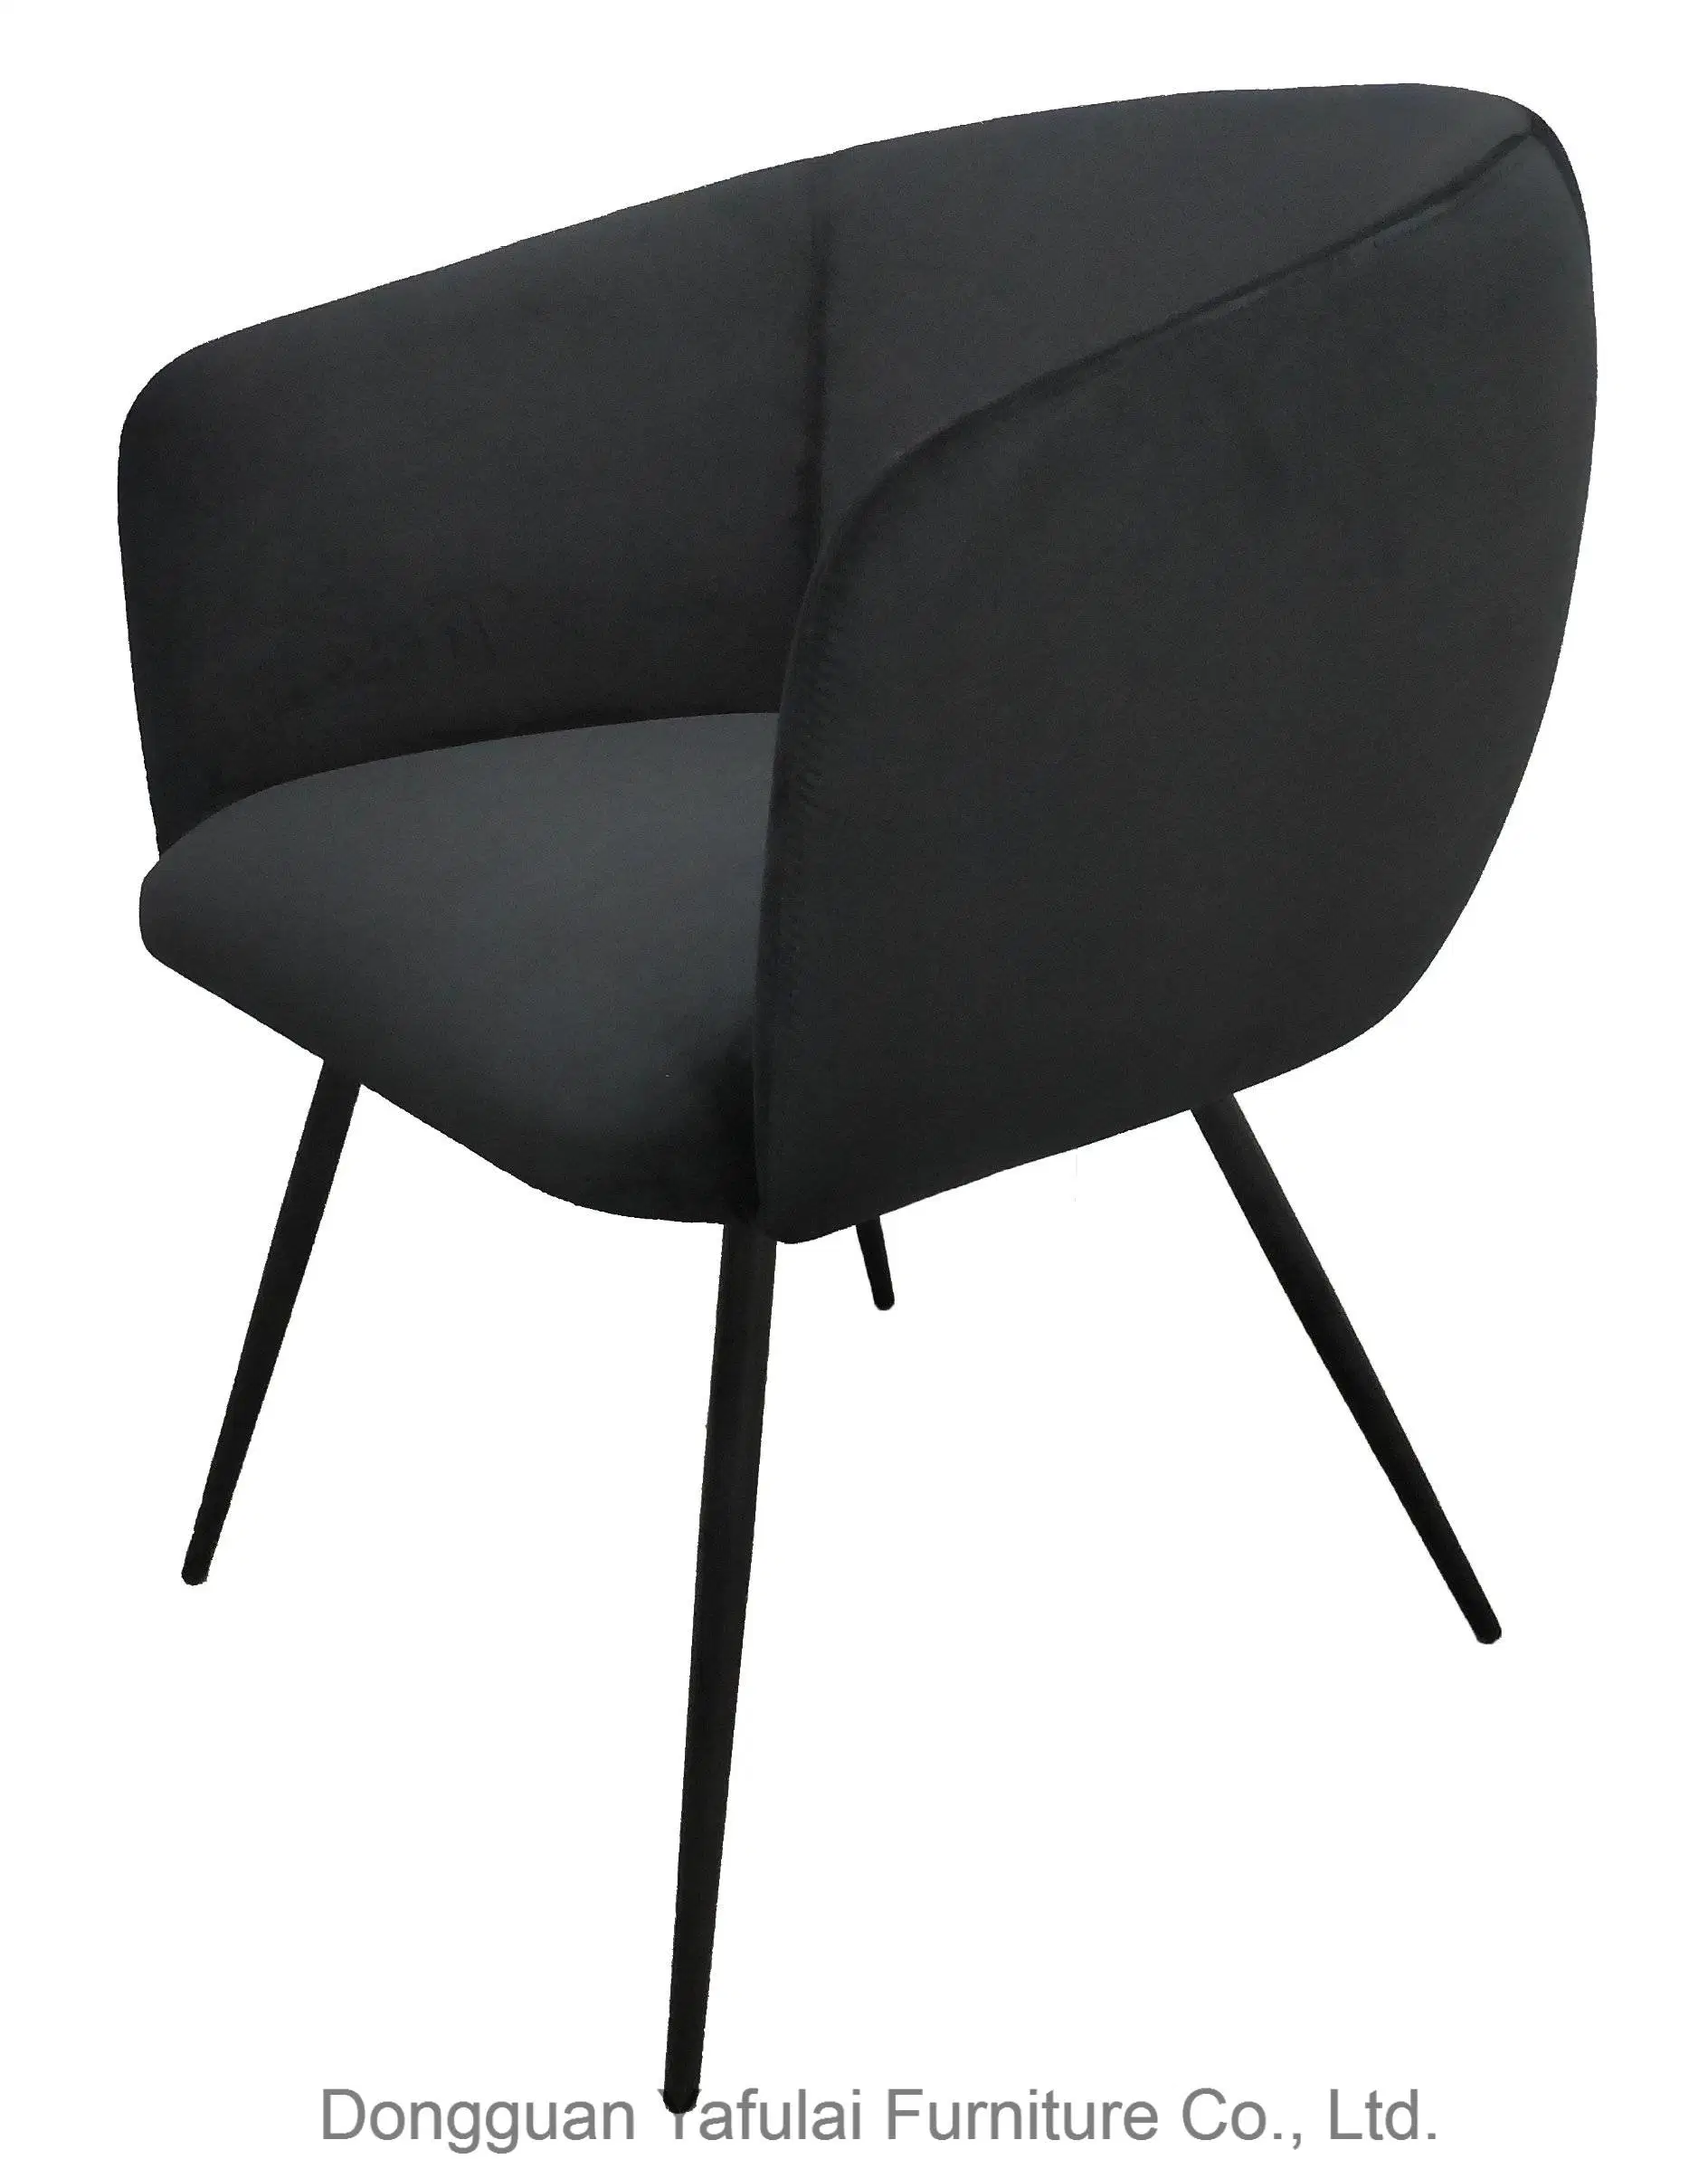 كرسي جديد من القماش الأسود المصنوع من أرمستد كلاسيكي